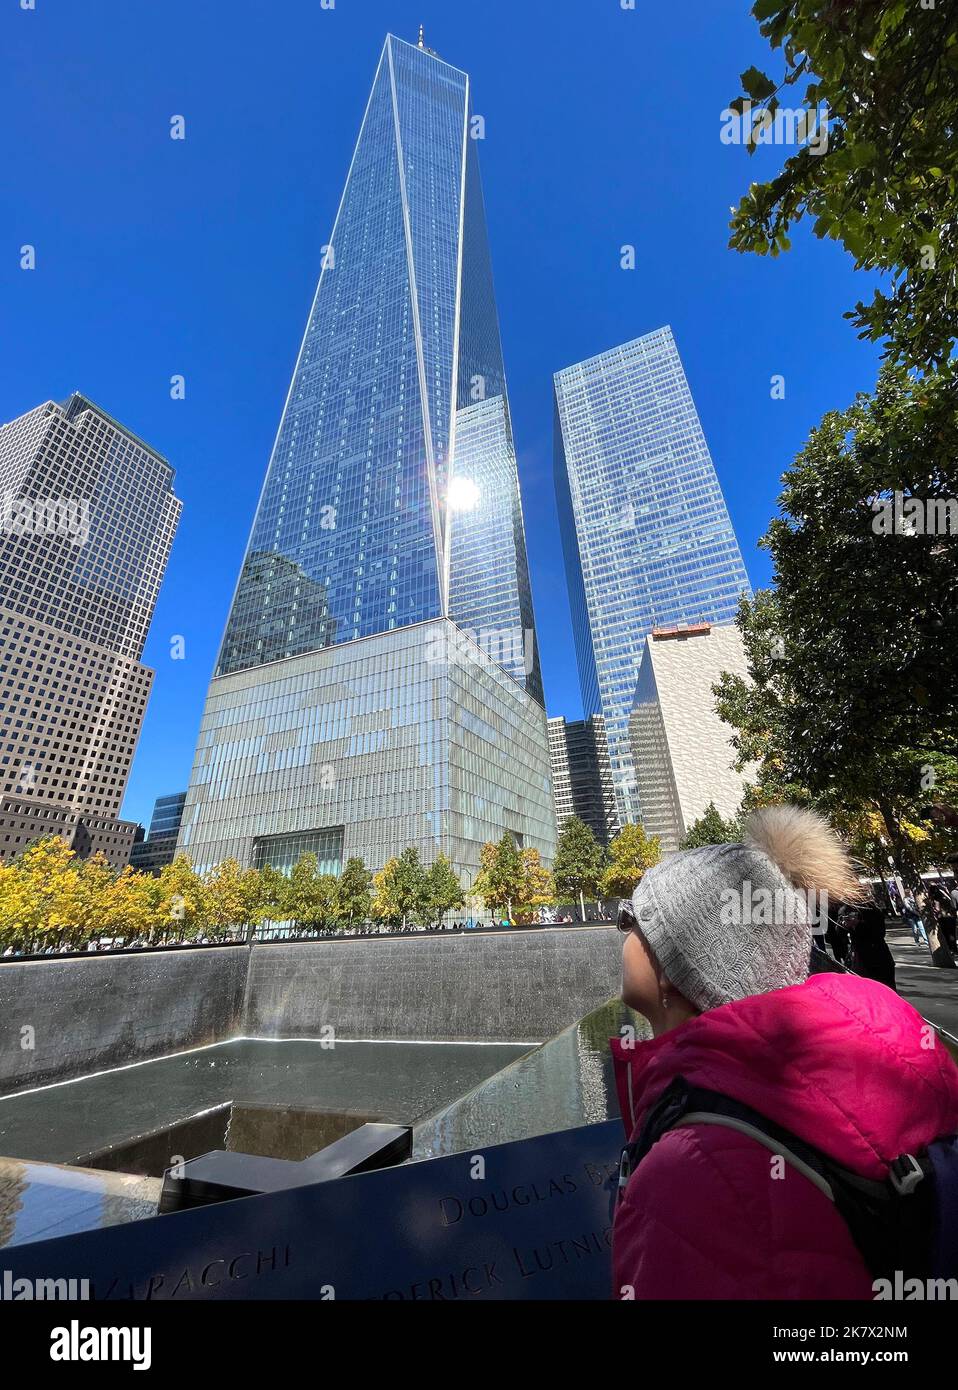 Ragazza teenager turista ammirando la Freedom Tower e la fontana. Freedom Tower e Memorial Fountain commemorano gli attacchi del 11 settembre del 2001, loc Foto Stock